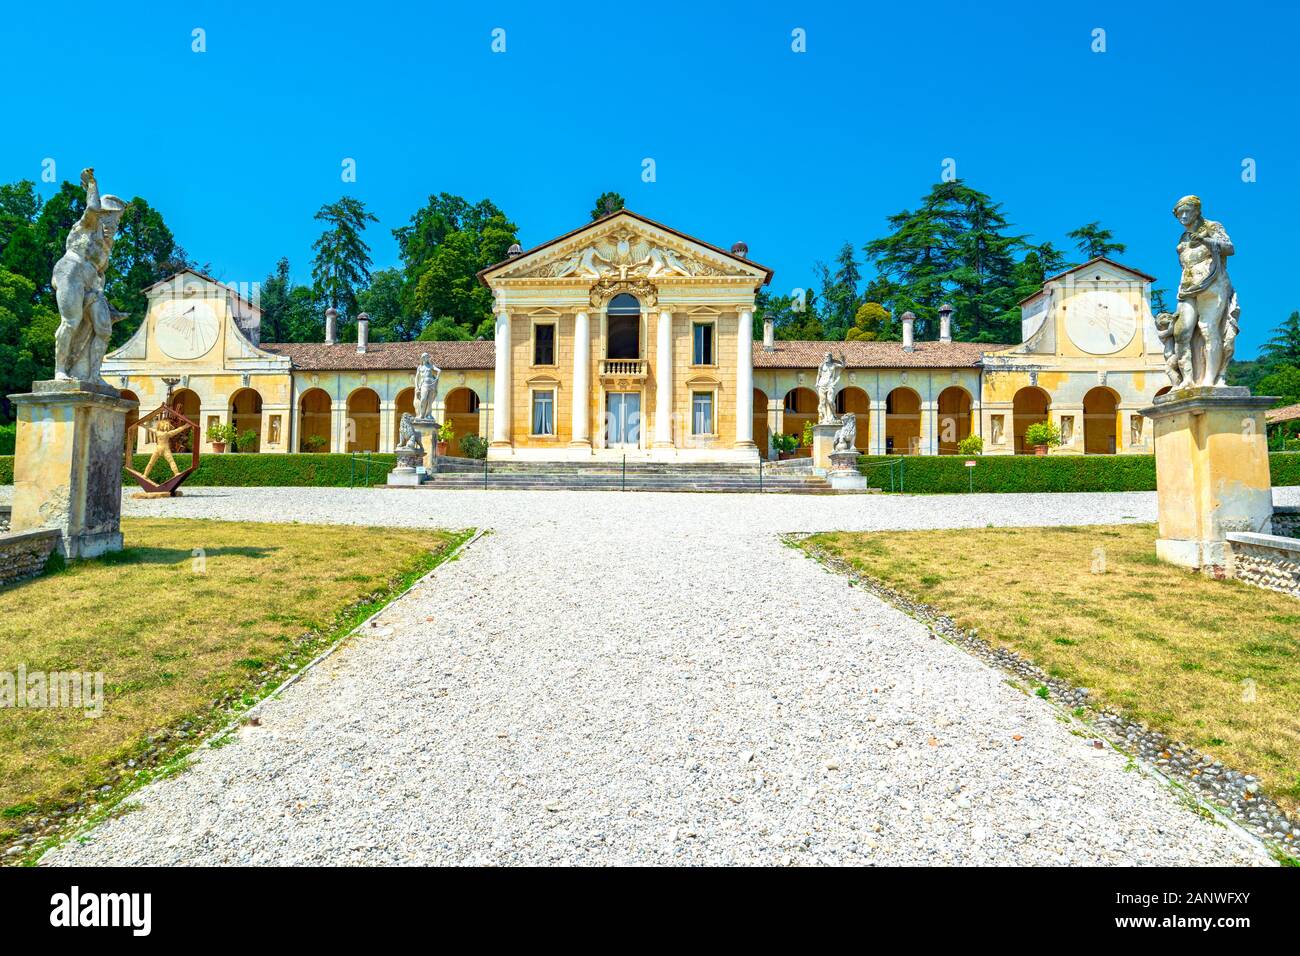 Villa Barbaro, entworfen von Andrea Palladio Architekt, Jahr 1560, in Maser von Treviso in Italien - august 06 2014 Stockfoto